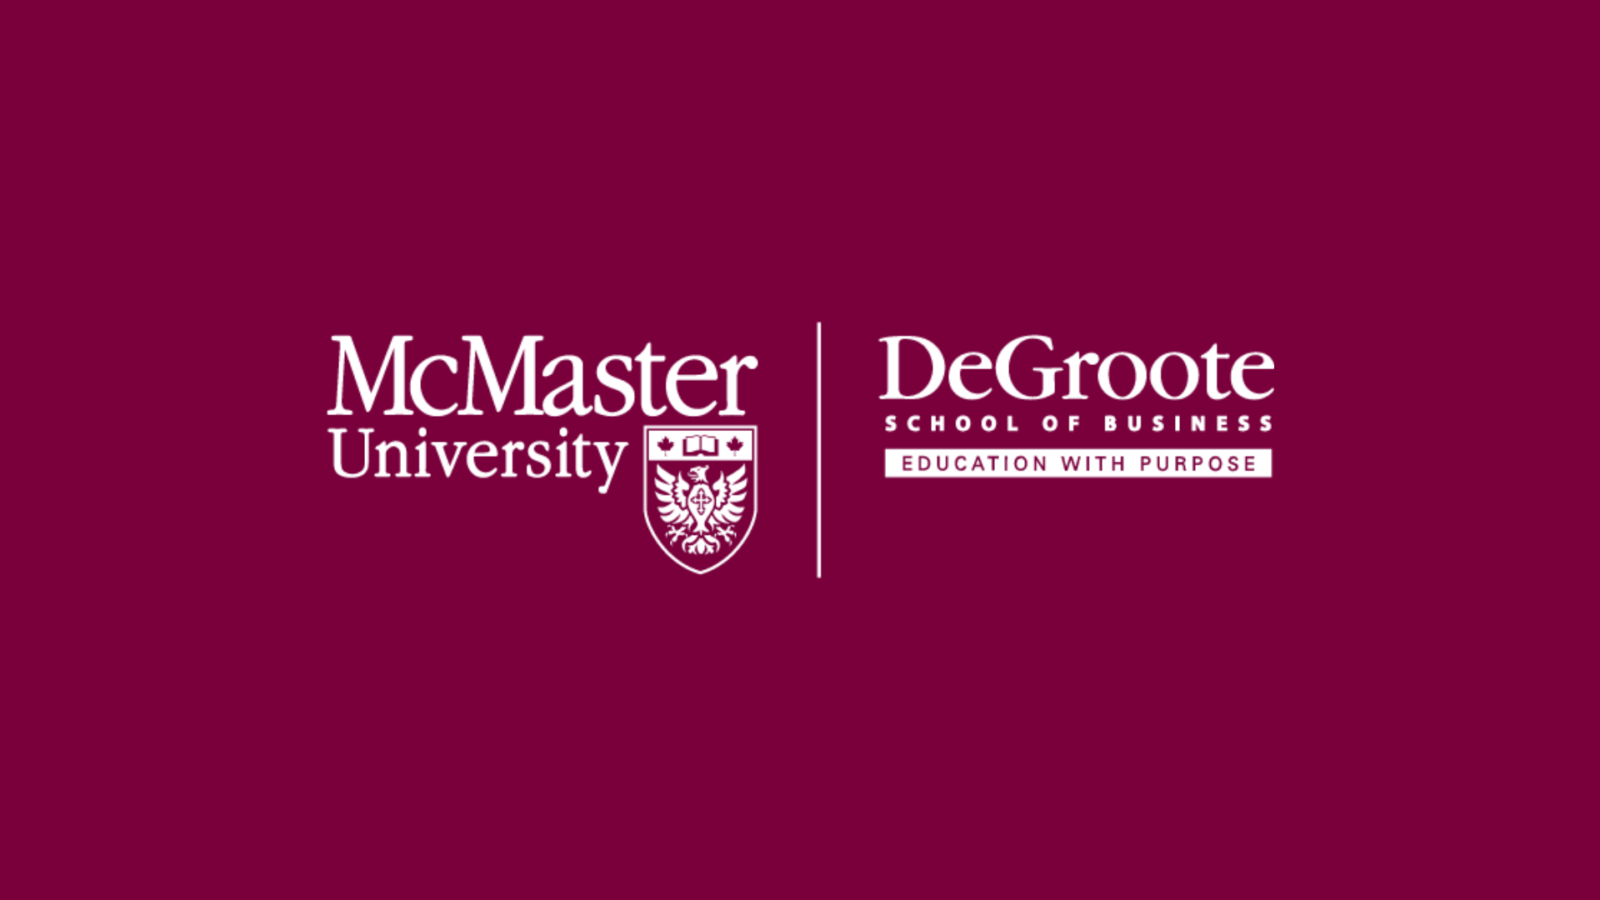 McMaster University logo on a Maroon background.